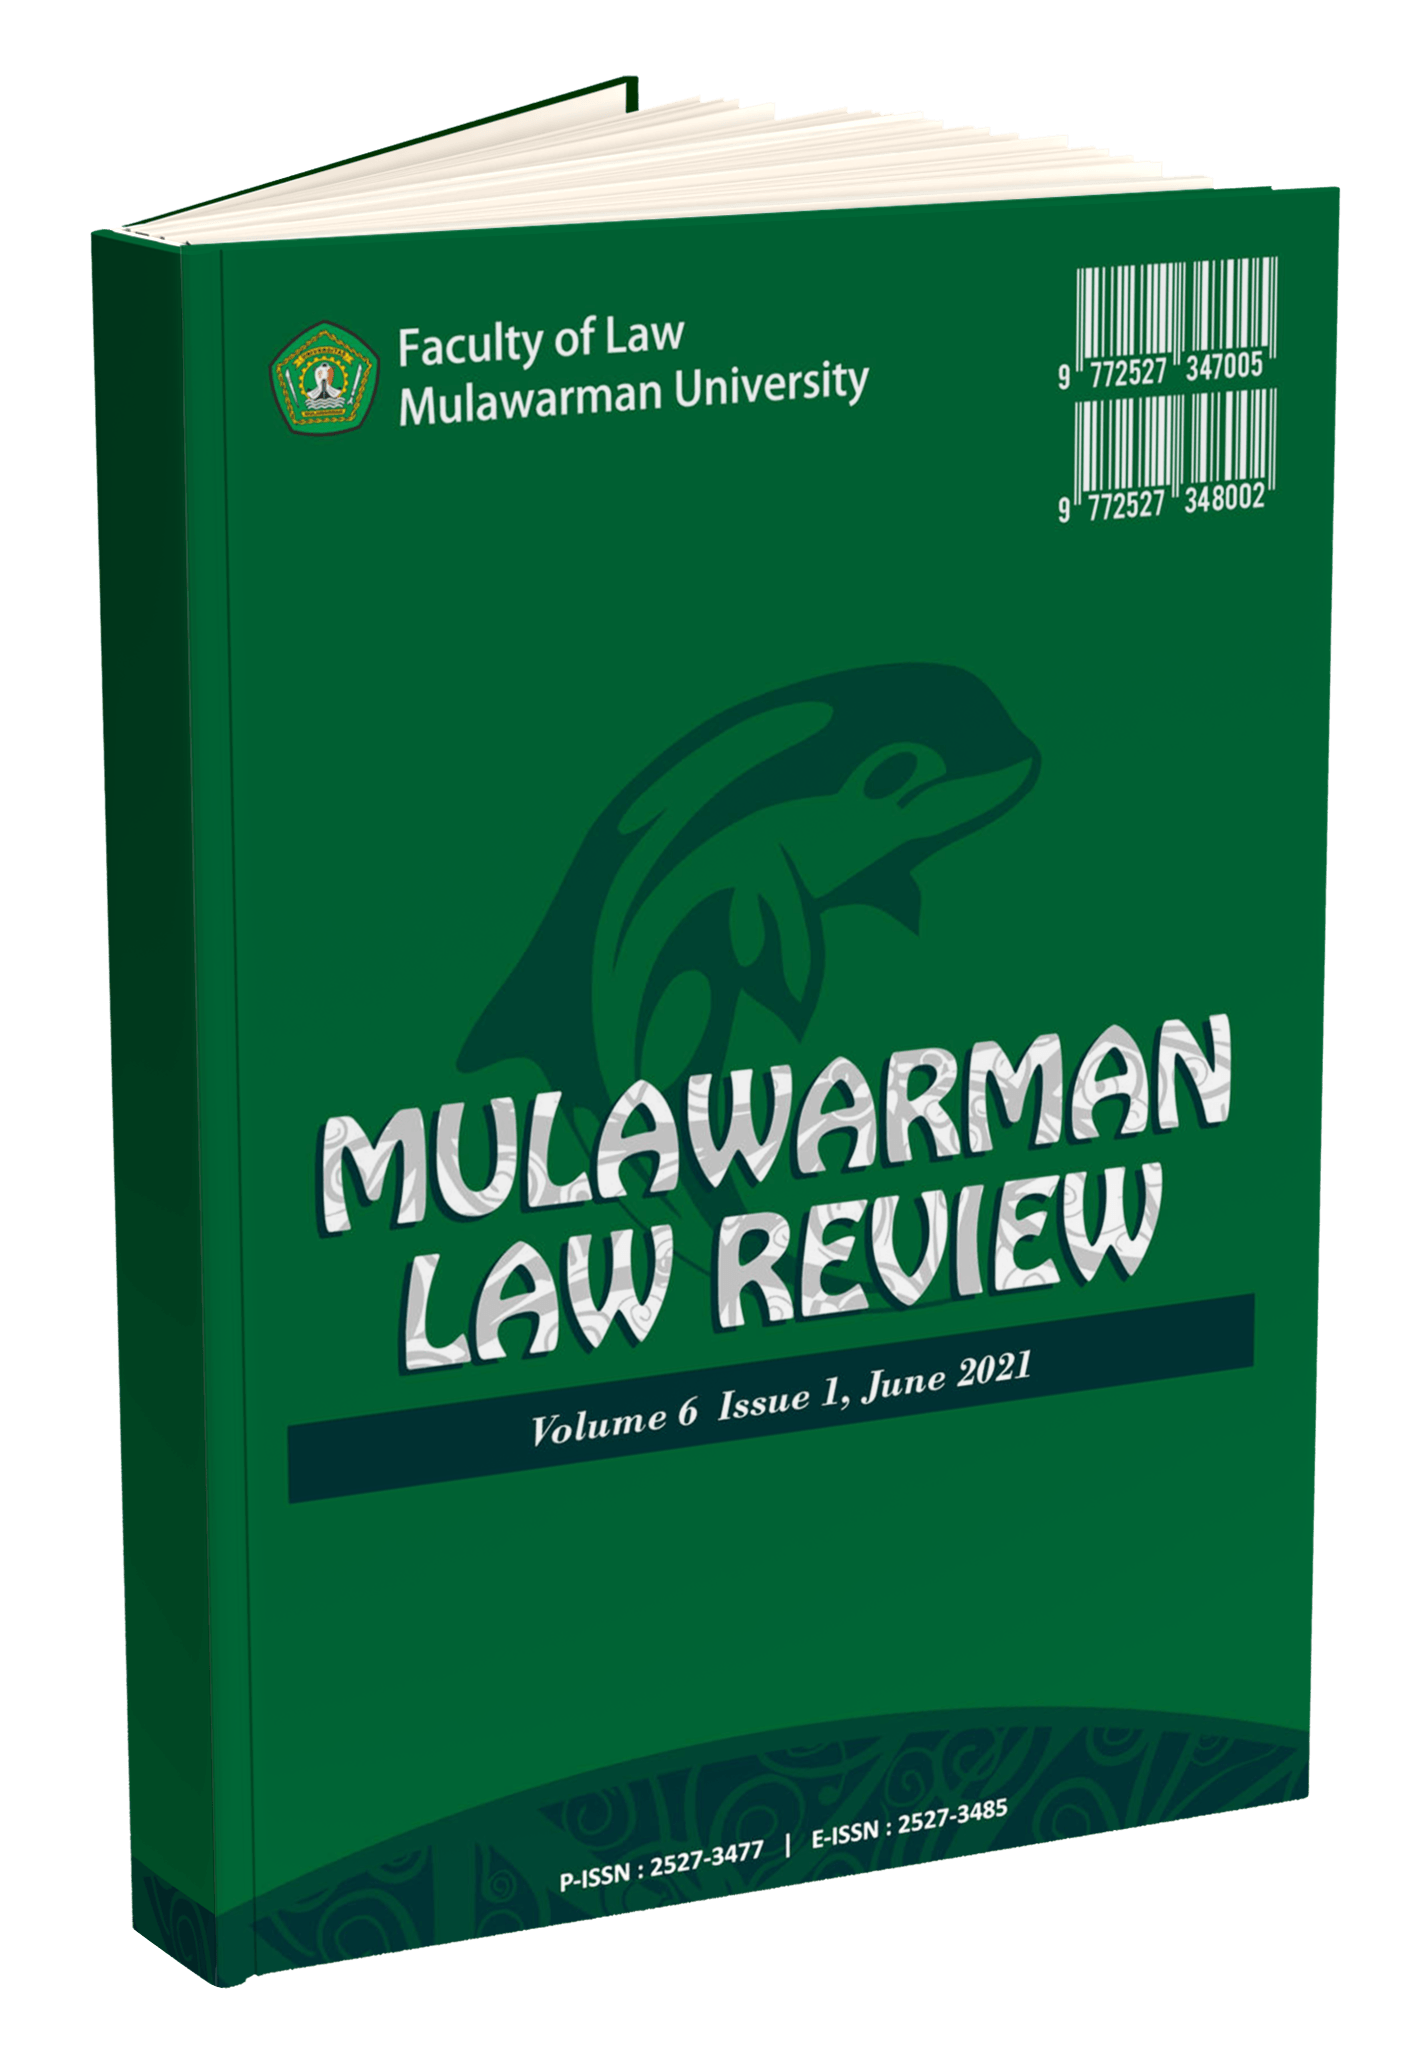 Cover Jurnal Mulrev Volume 6 Issue 1 June 2021